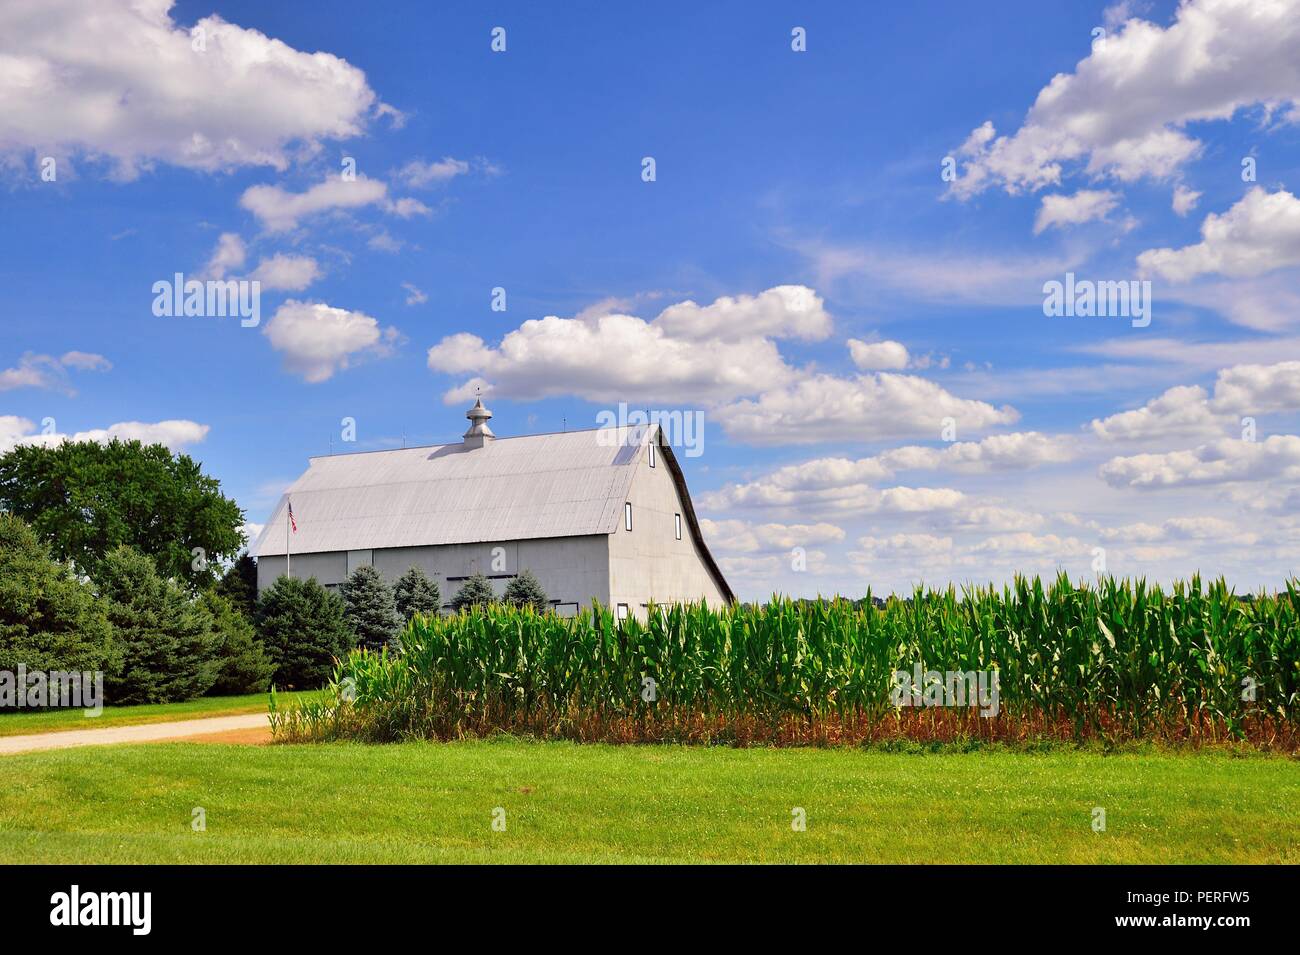 Creston, Illinois, USA.Grange moderne en métal dans le centre-nord rural de l'Illinois, en face d'une culture de maïs mûre. Banque D'Images